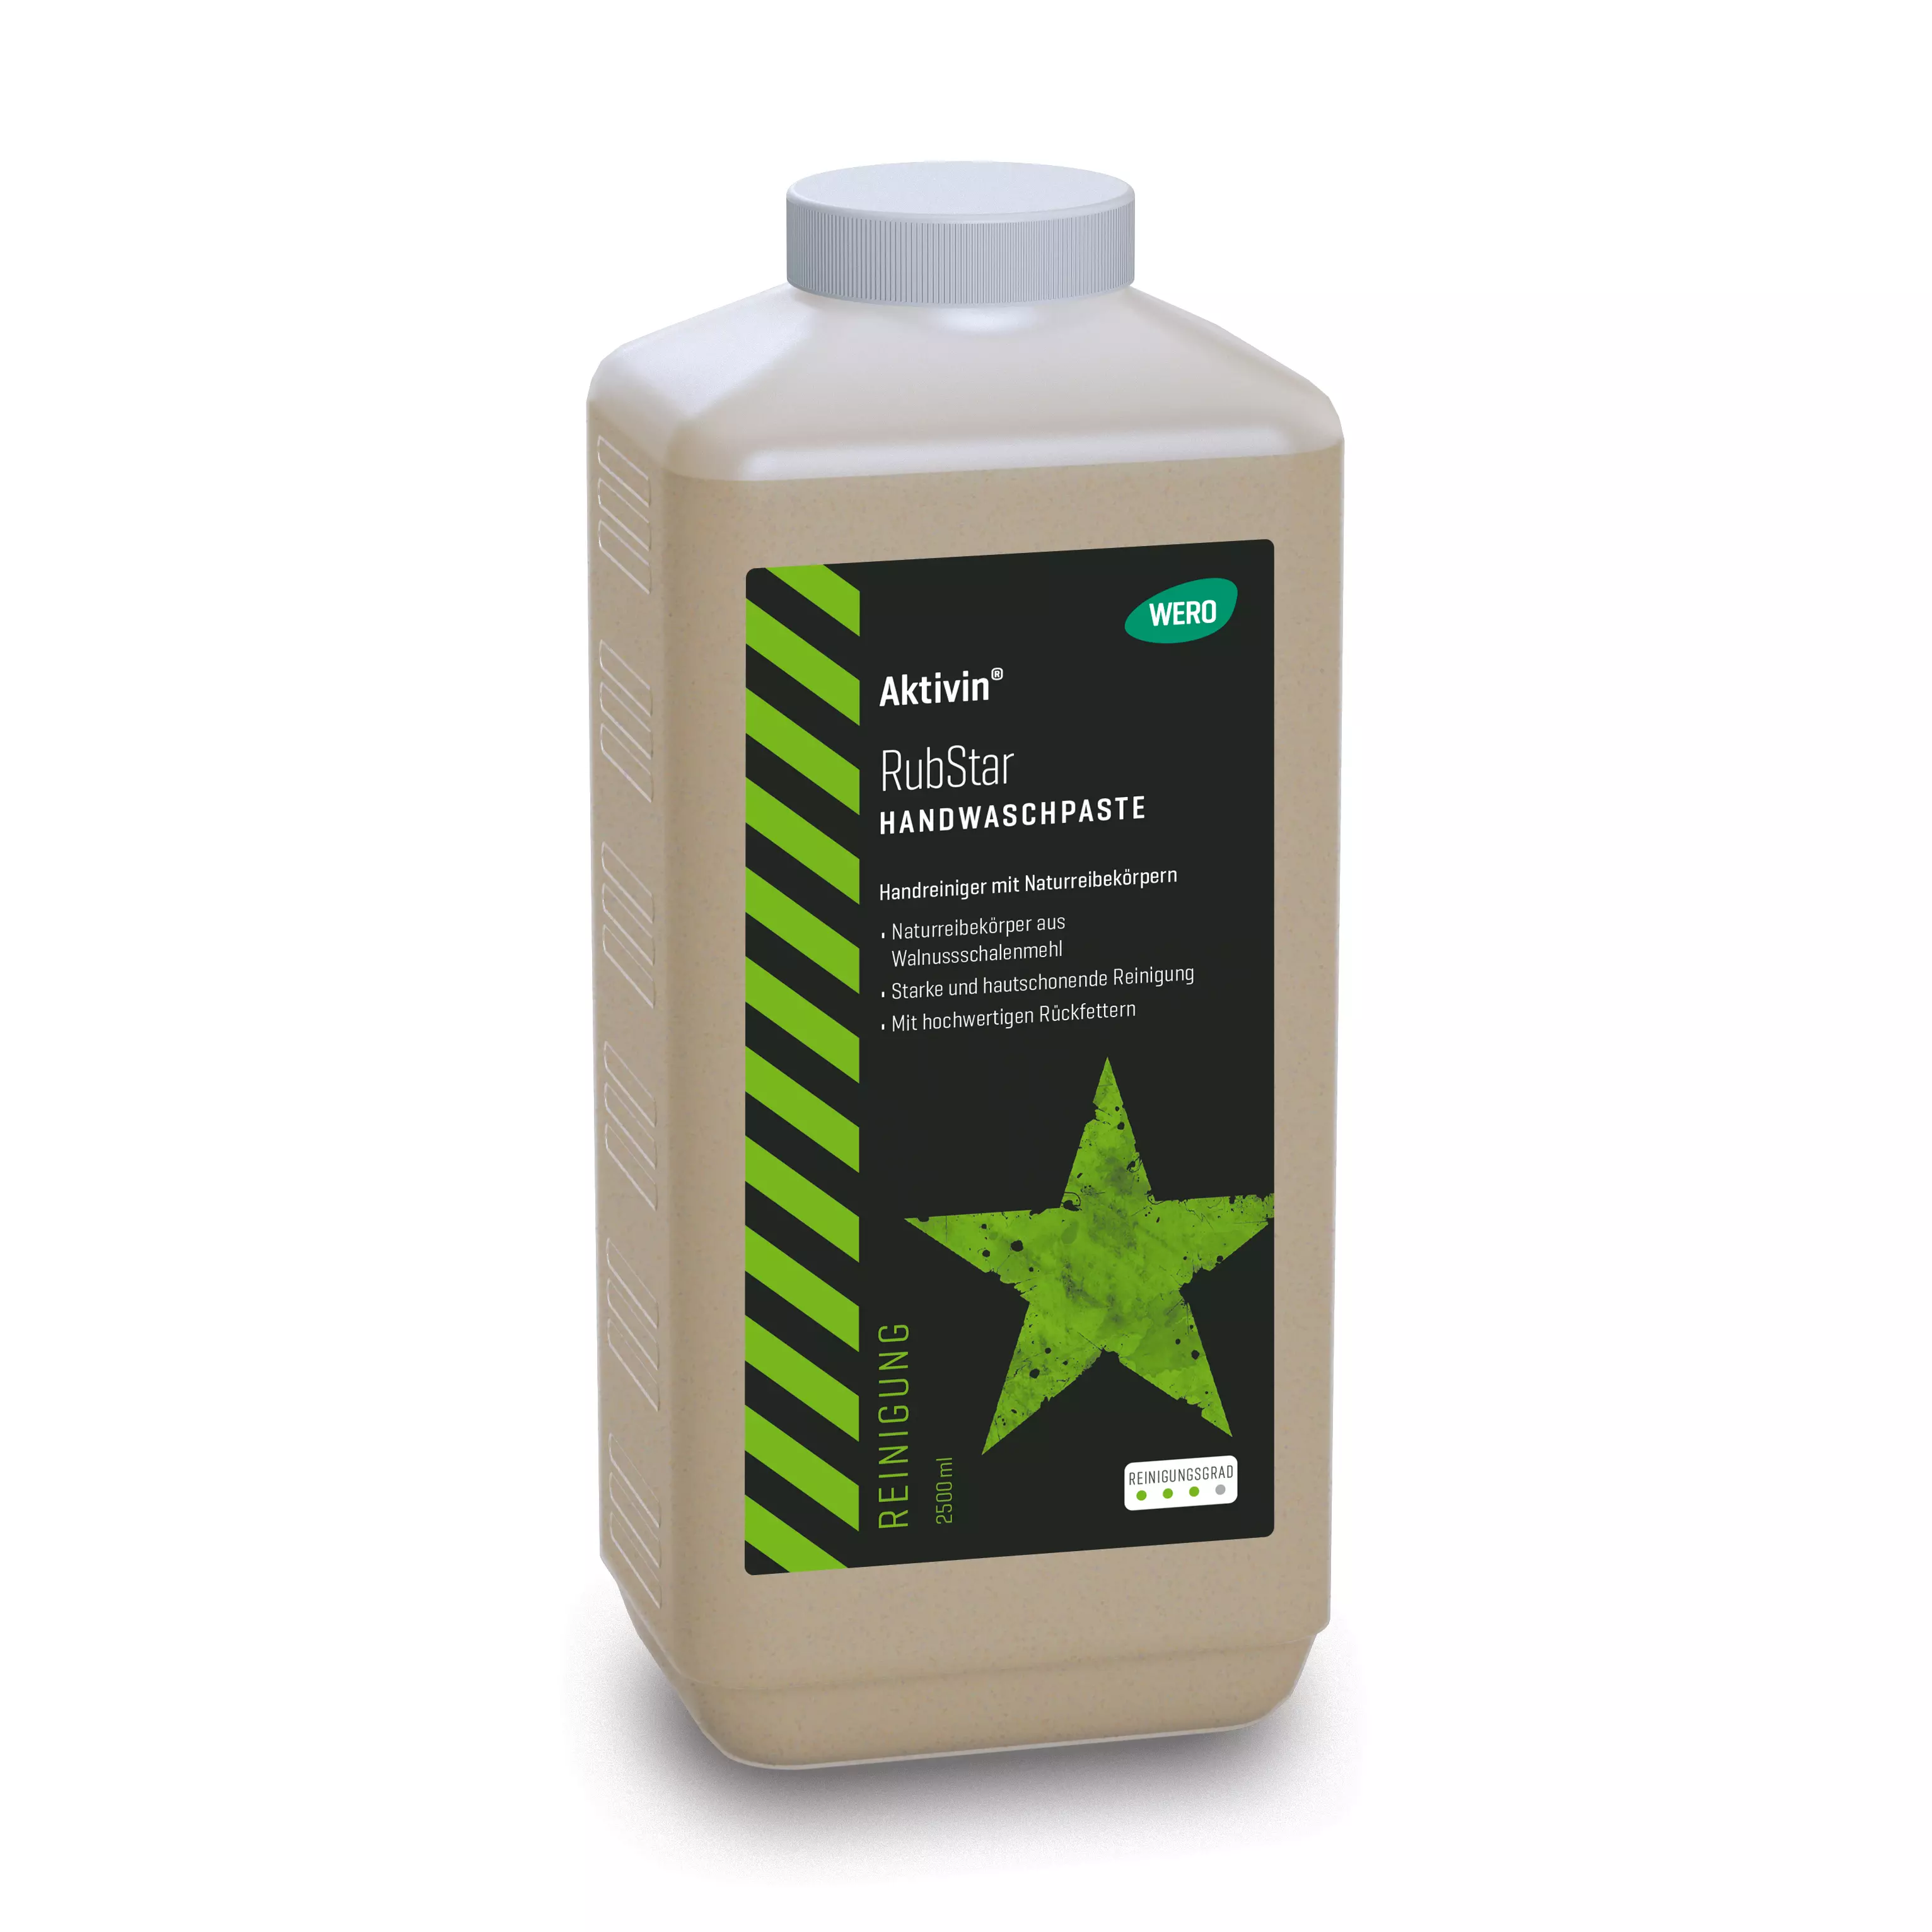 Skin cleansing Aktivin® RubStar - Euro bottle, 2,500 ml